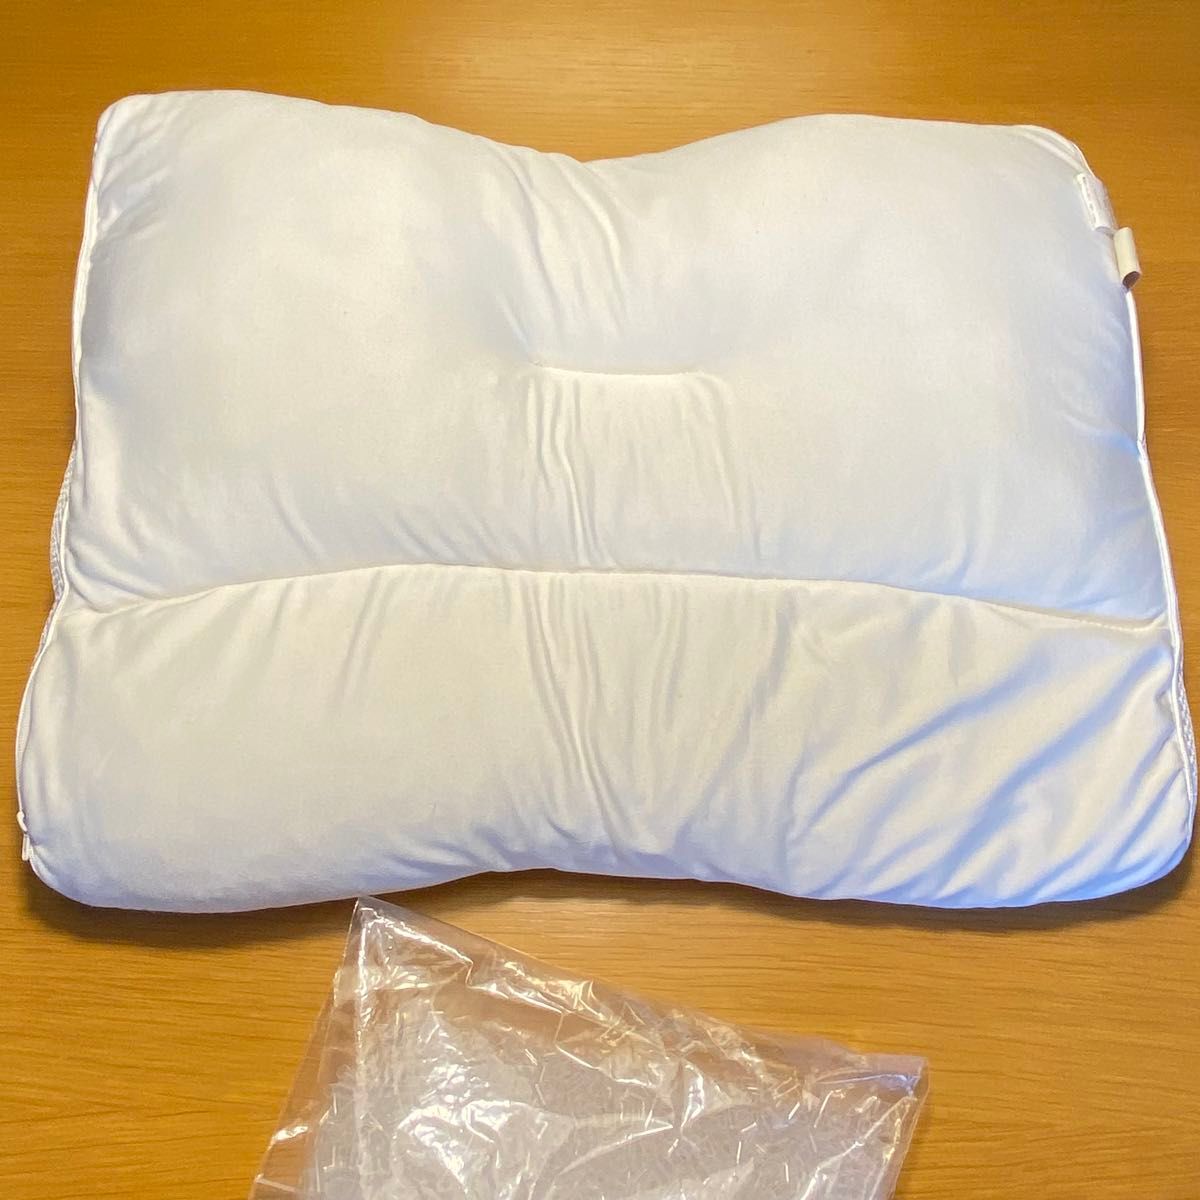 中古 ストレートネック 枕  快眠枕 高さ調整 洗える枕 いびき対策 安眠枕